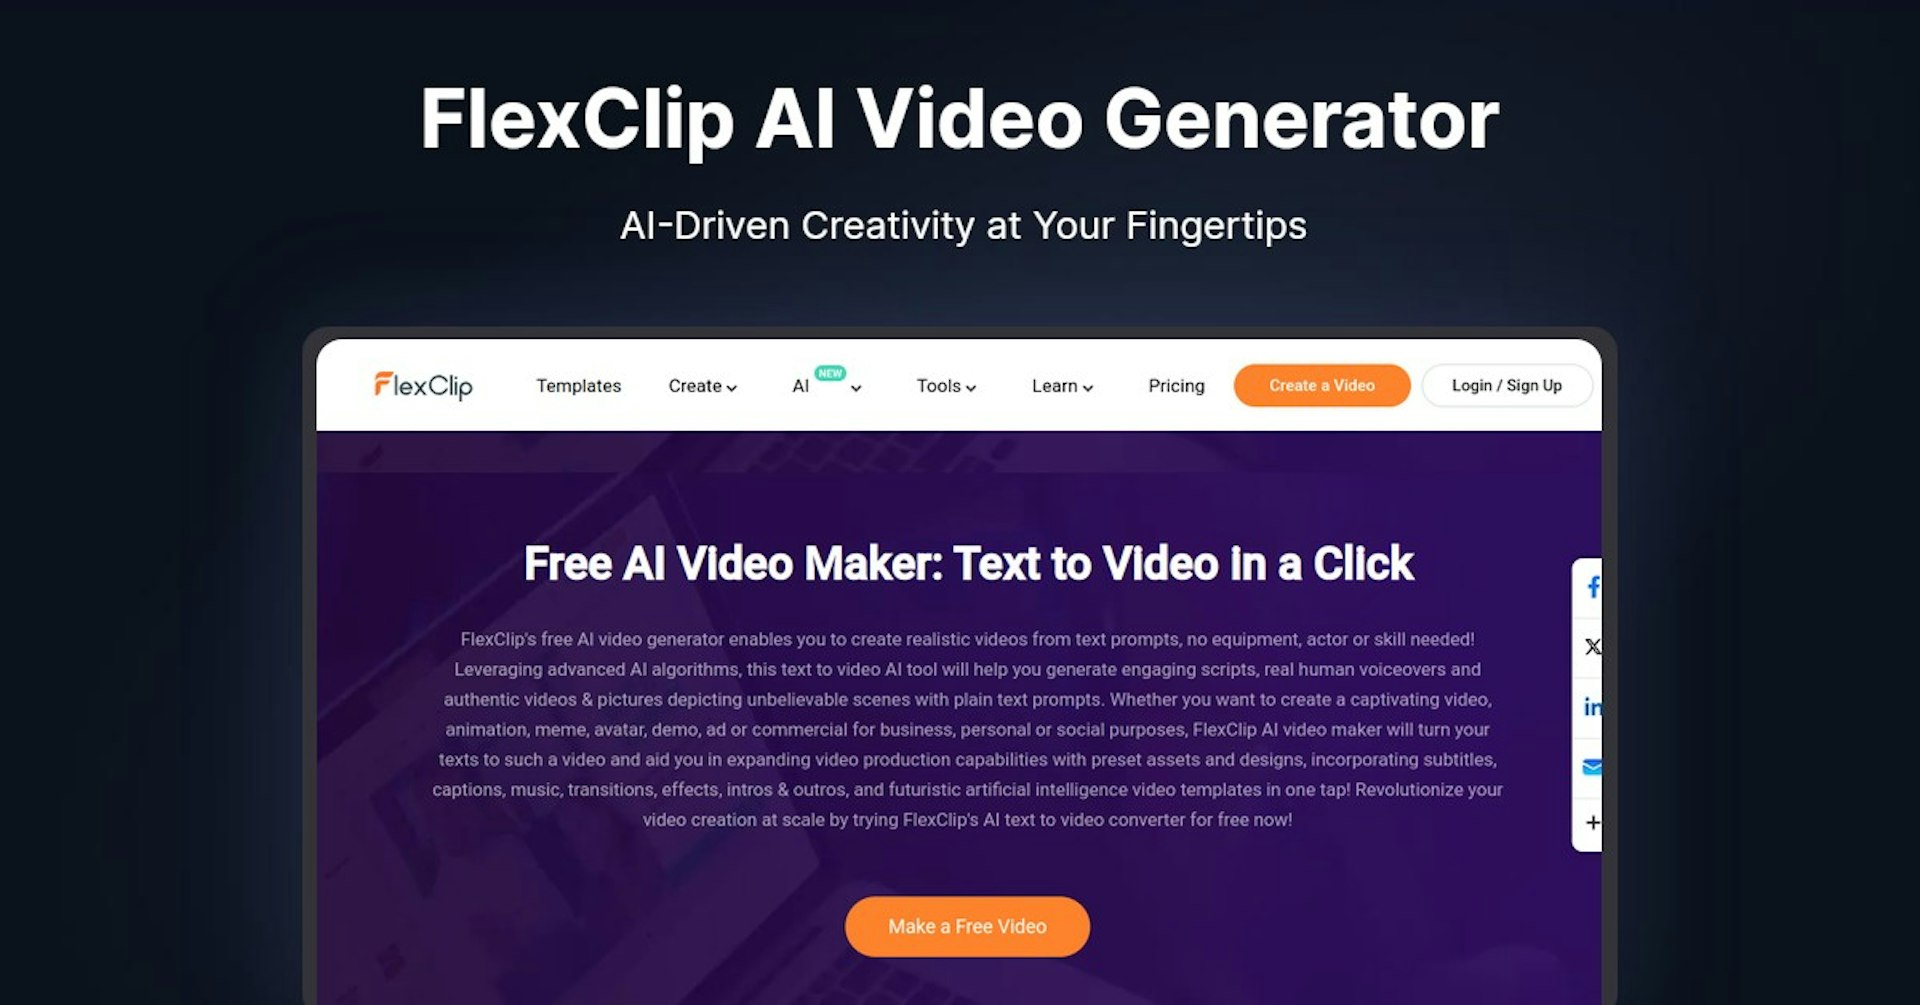 FlexClip AI Video Generator